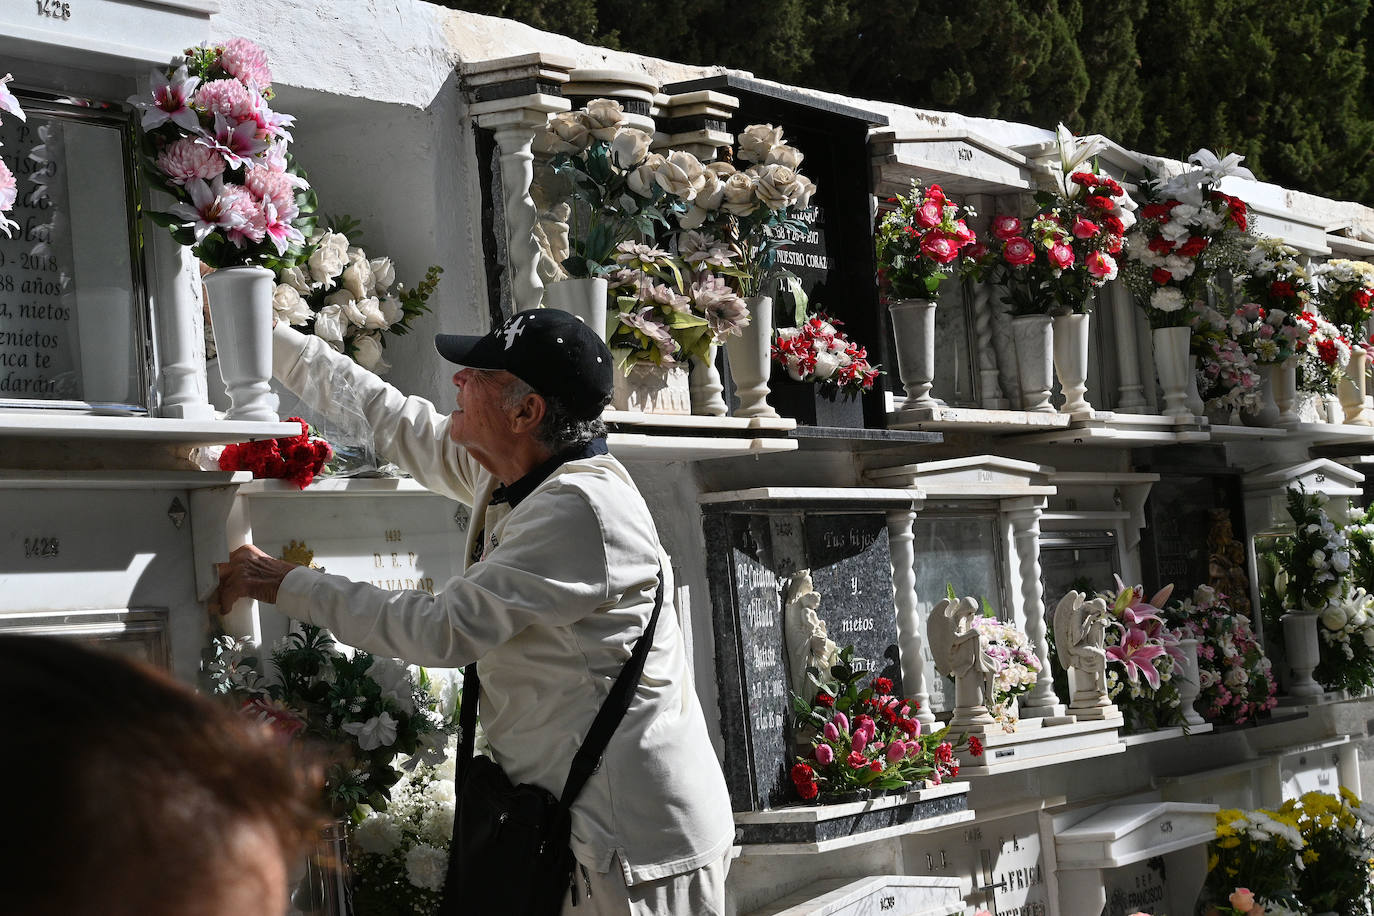 Los cementerios de la provincia vuelven a llenarse de malagueños para honrar la memorias de sus seres queridos, una actividad que el año pasado fue mucho menos multitudinaria por la pandemia. Imagen tomada en Marbella. 